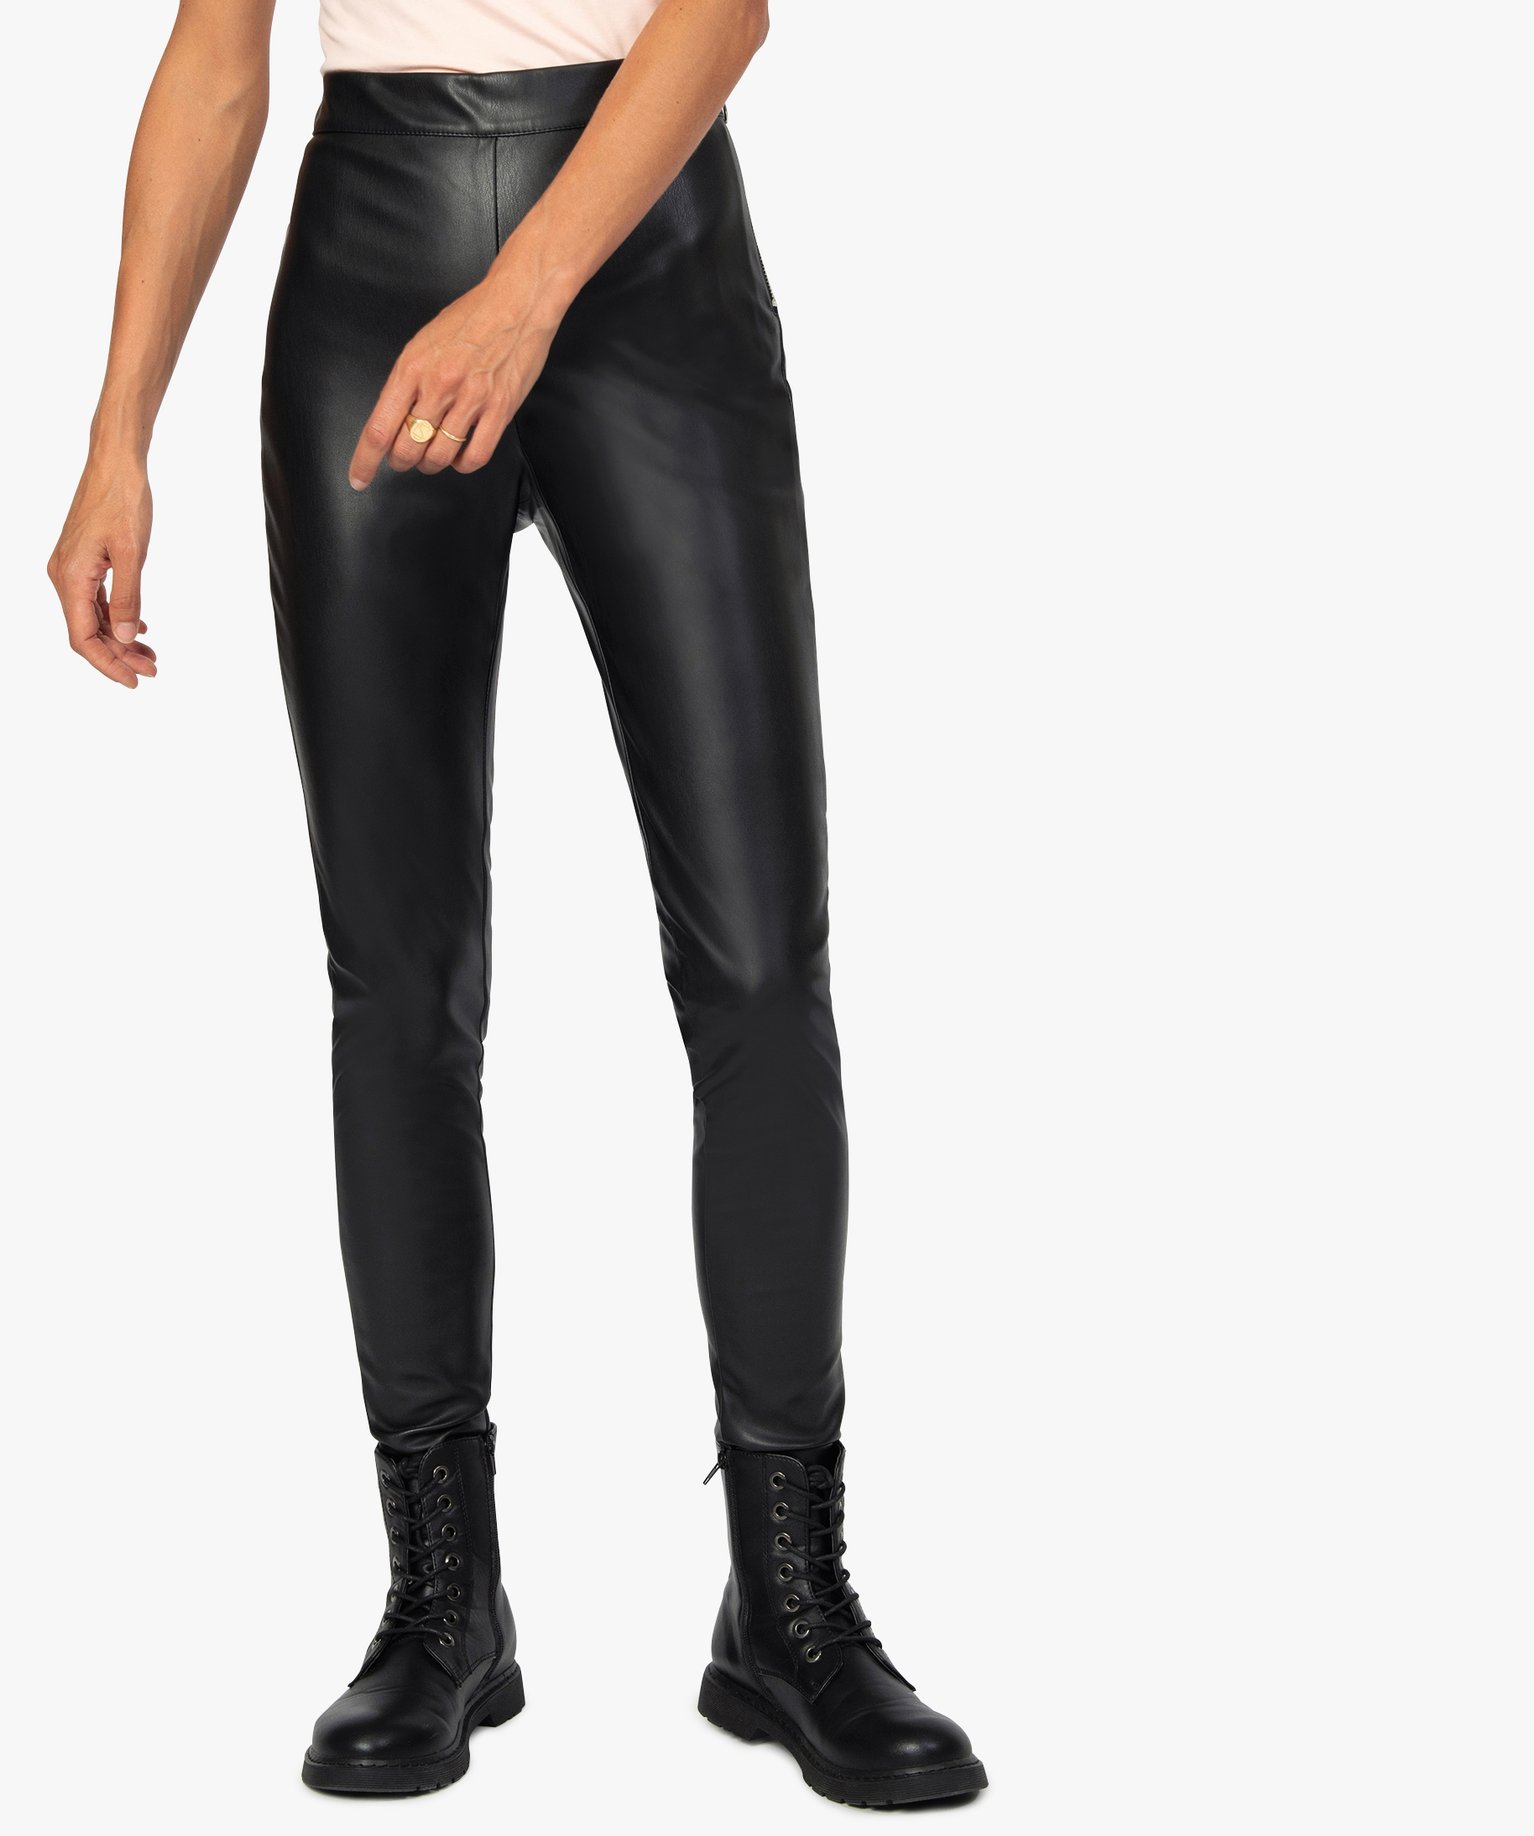 legging femme en cuir imitation avec zip fantaisie noir